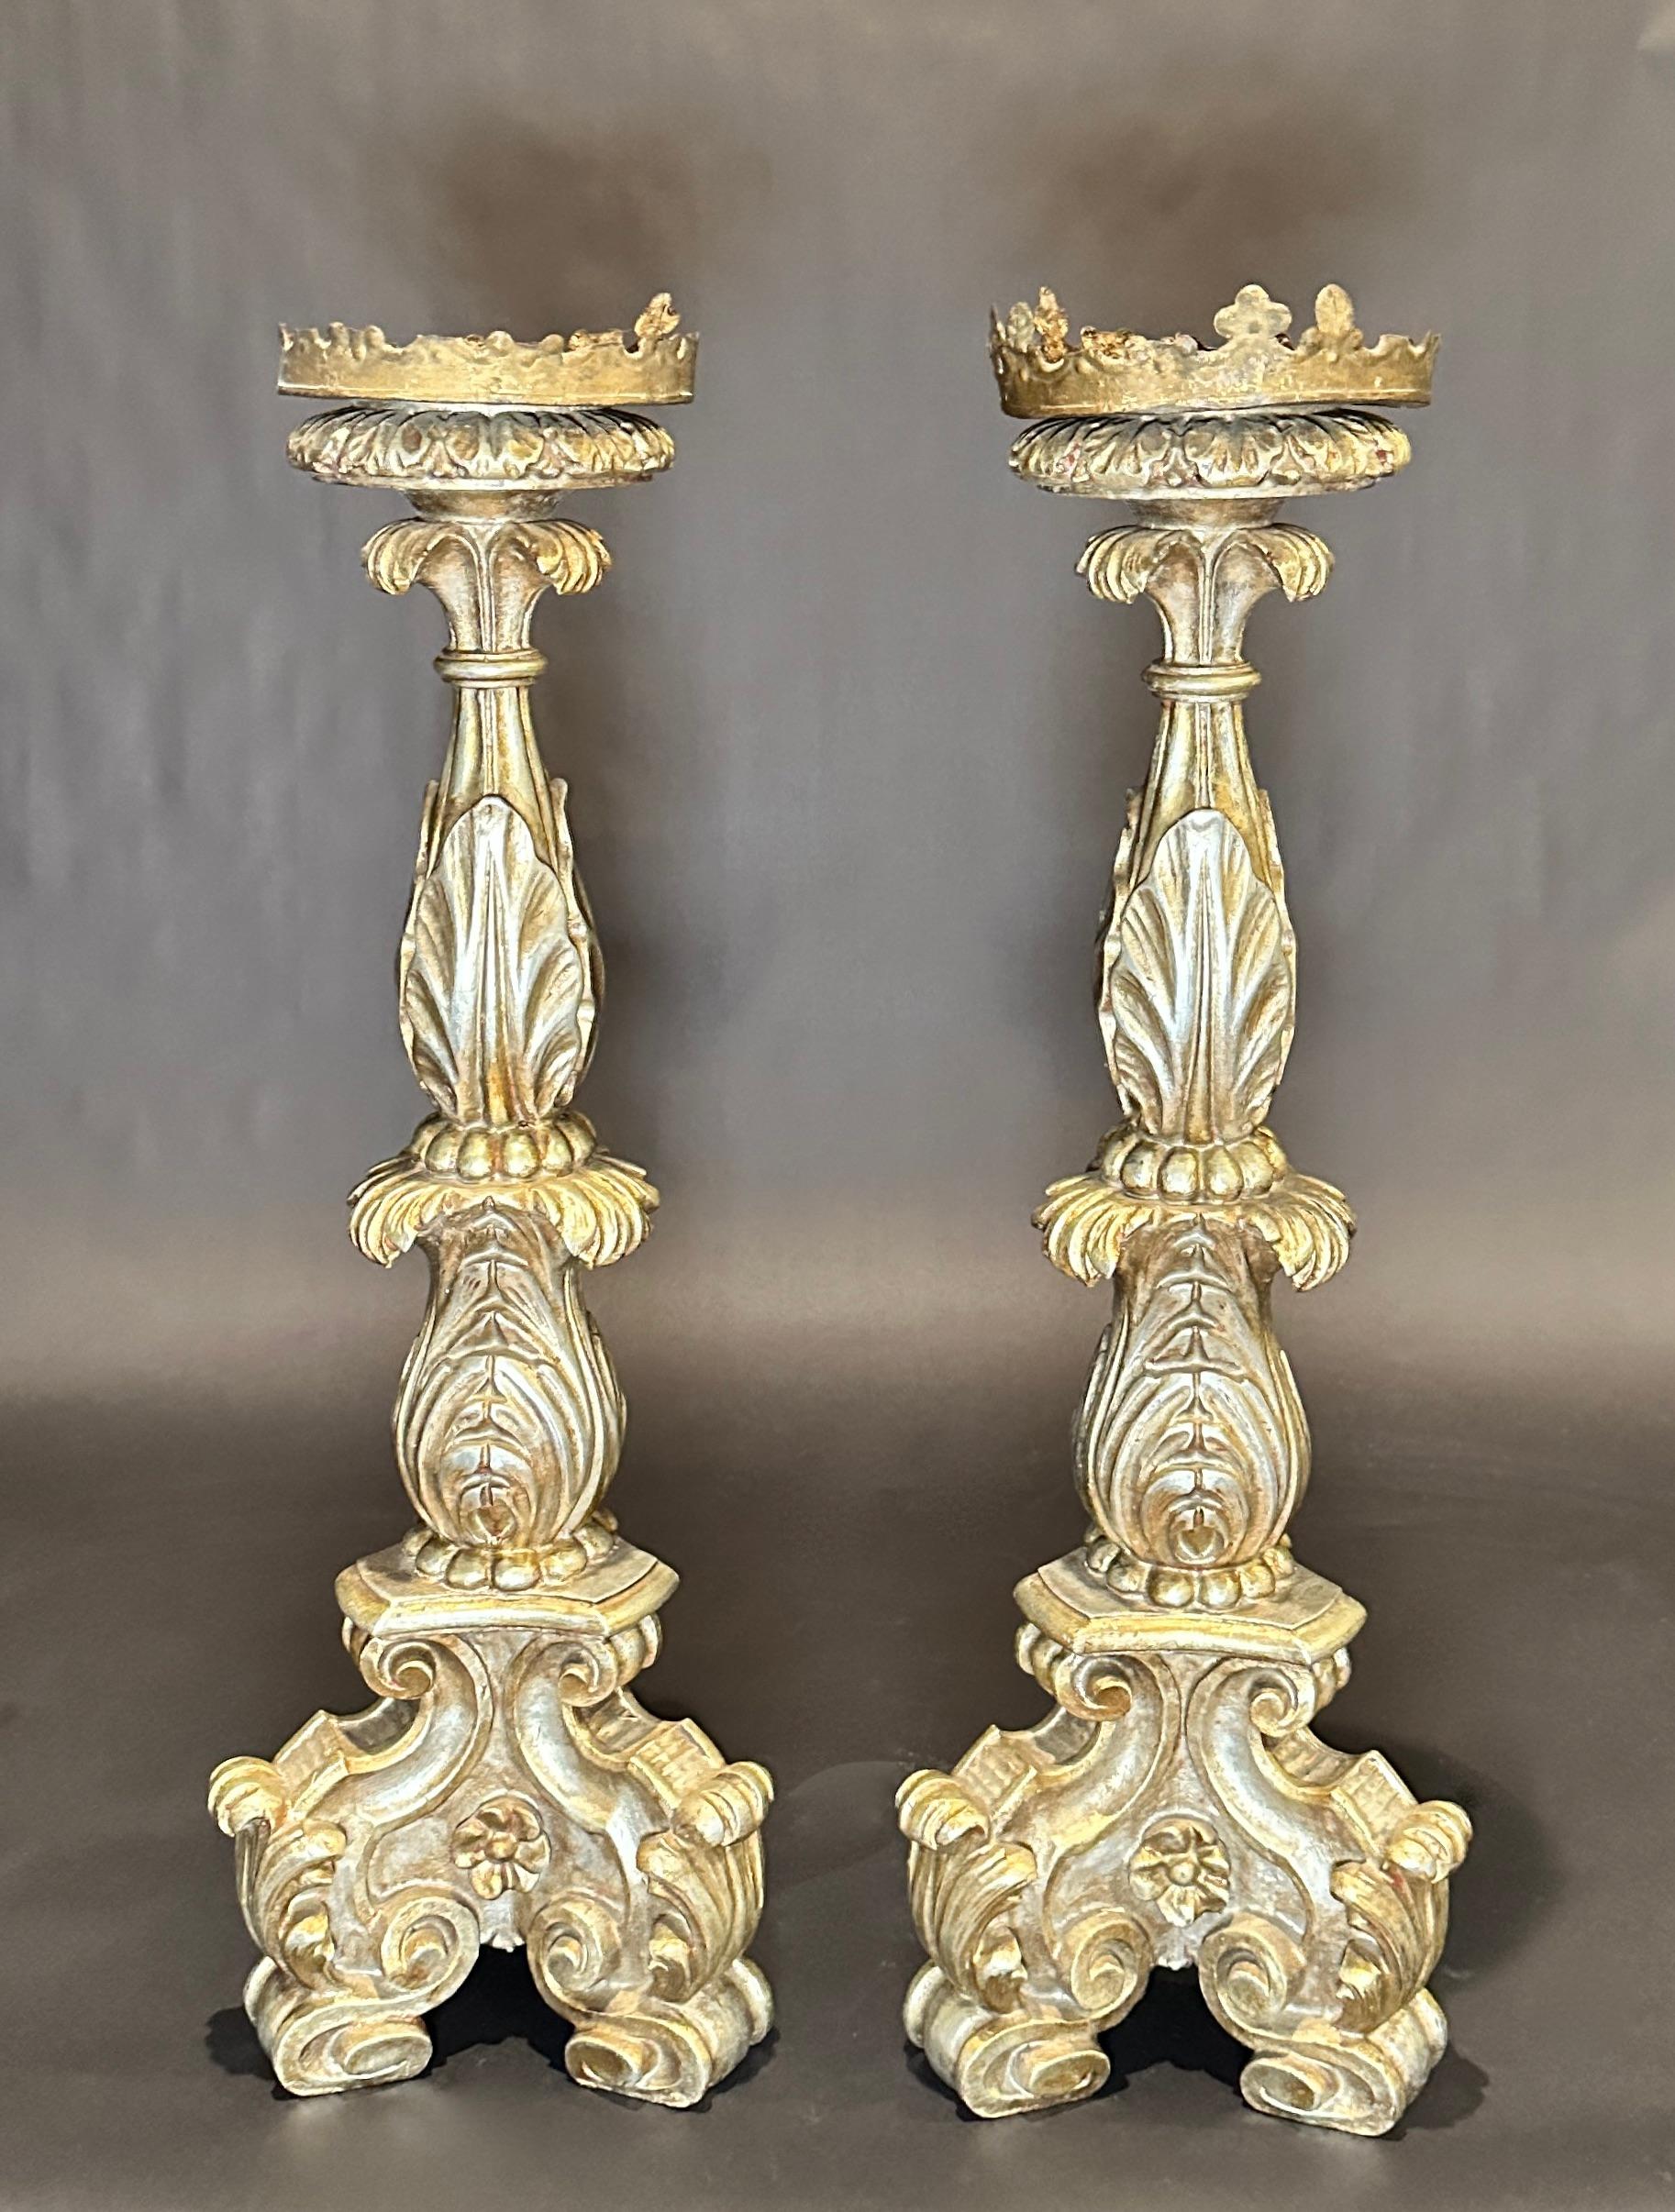 Superbe paire de chandeliers en bois doré sculpté à la main, de style baroque italien du XIXe siècle, à base tripode et à pied. Ces magnifiques chandeliers sont de grande taille, dorés à l'argent et ornés de sculptures. Bois doré à l'argent avec